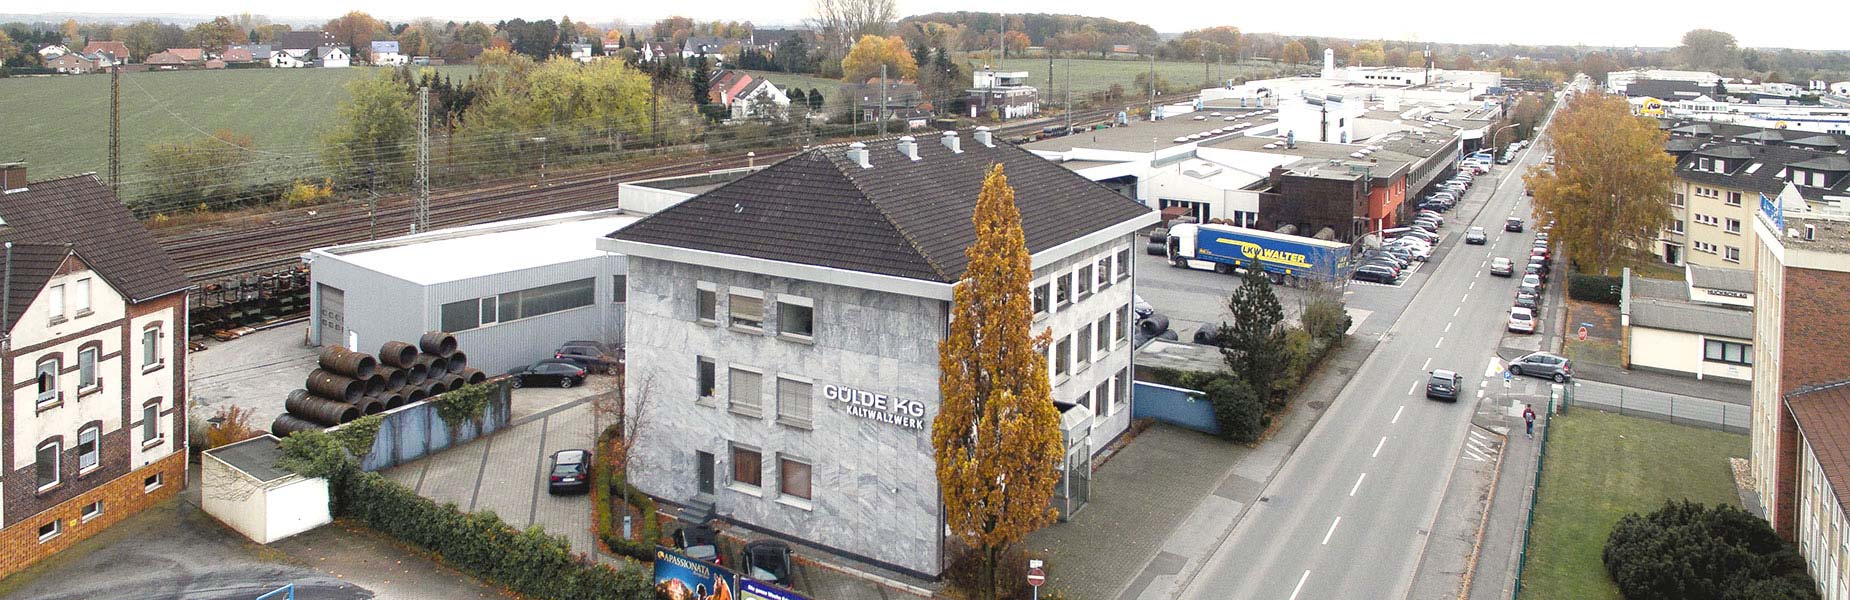 About us - Gülde cold-rolling mill in Kamen